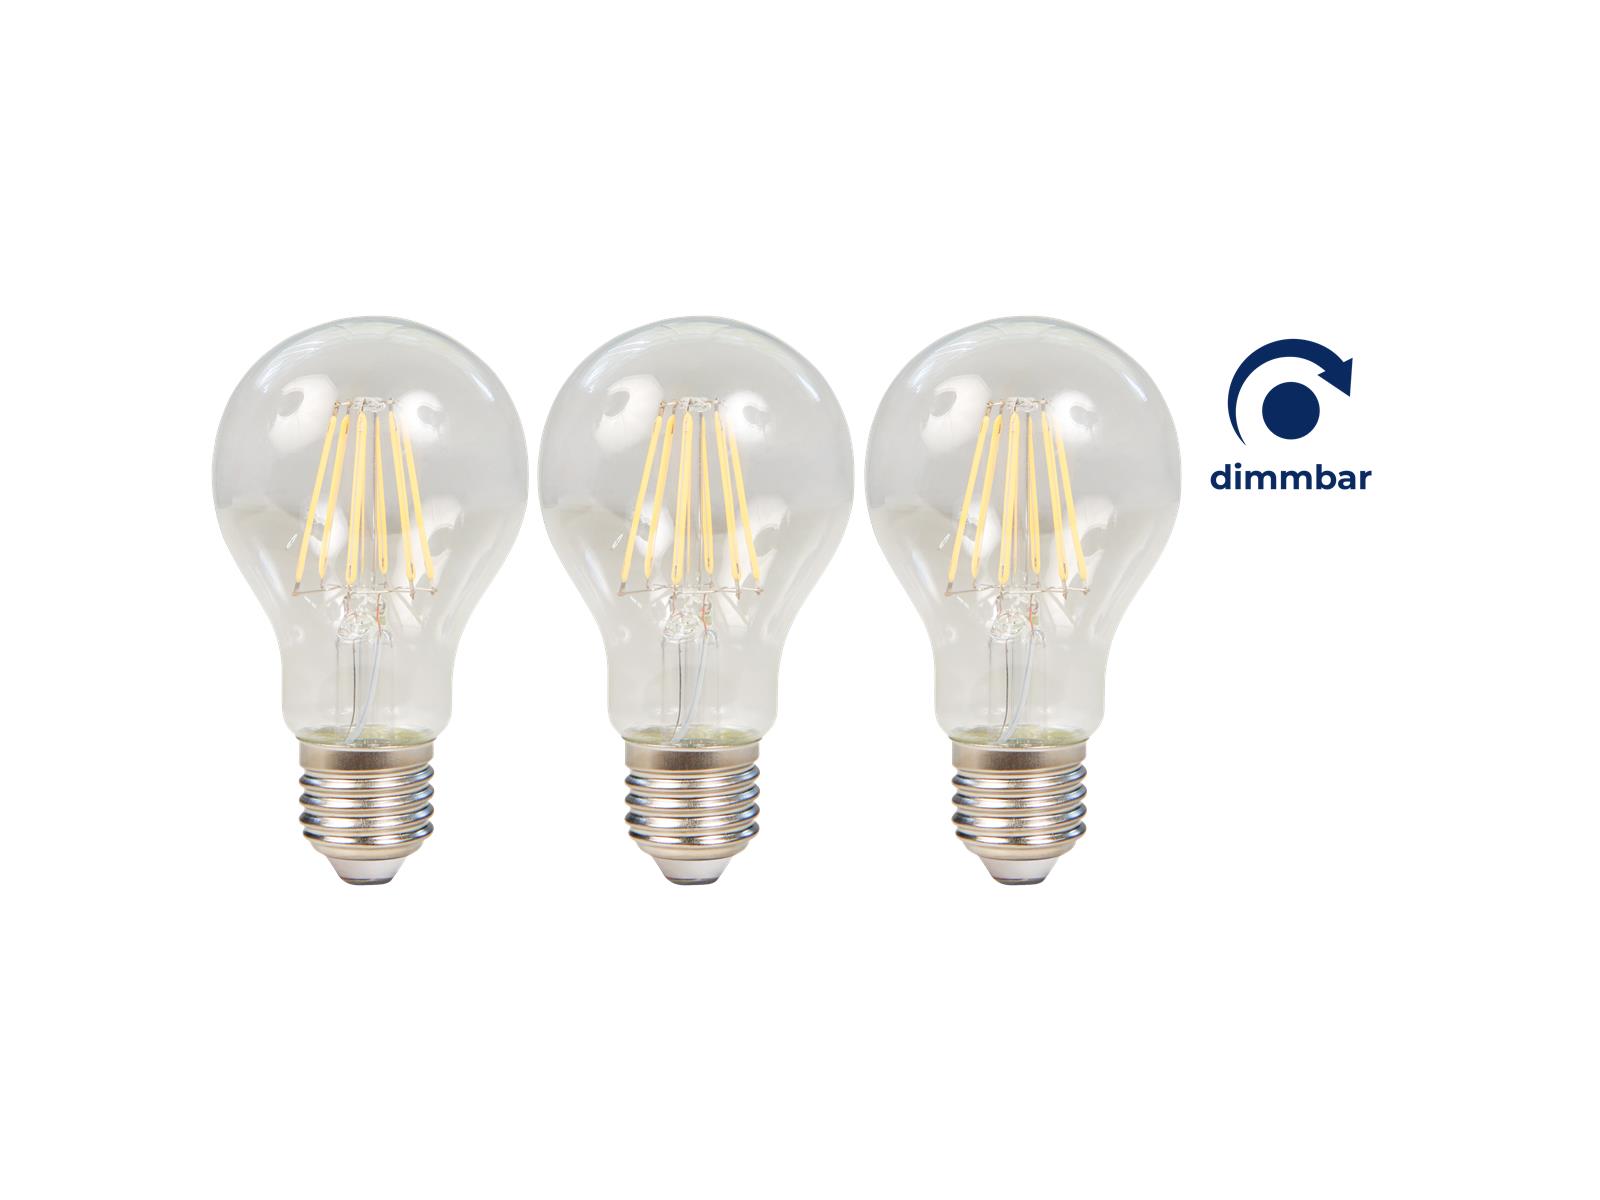 LED Filament Set McShine, 3x Glühlampe, E27, 7.5W, 800lm, warmweiß, klar, dimmbar